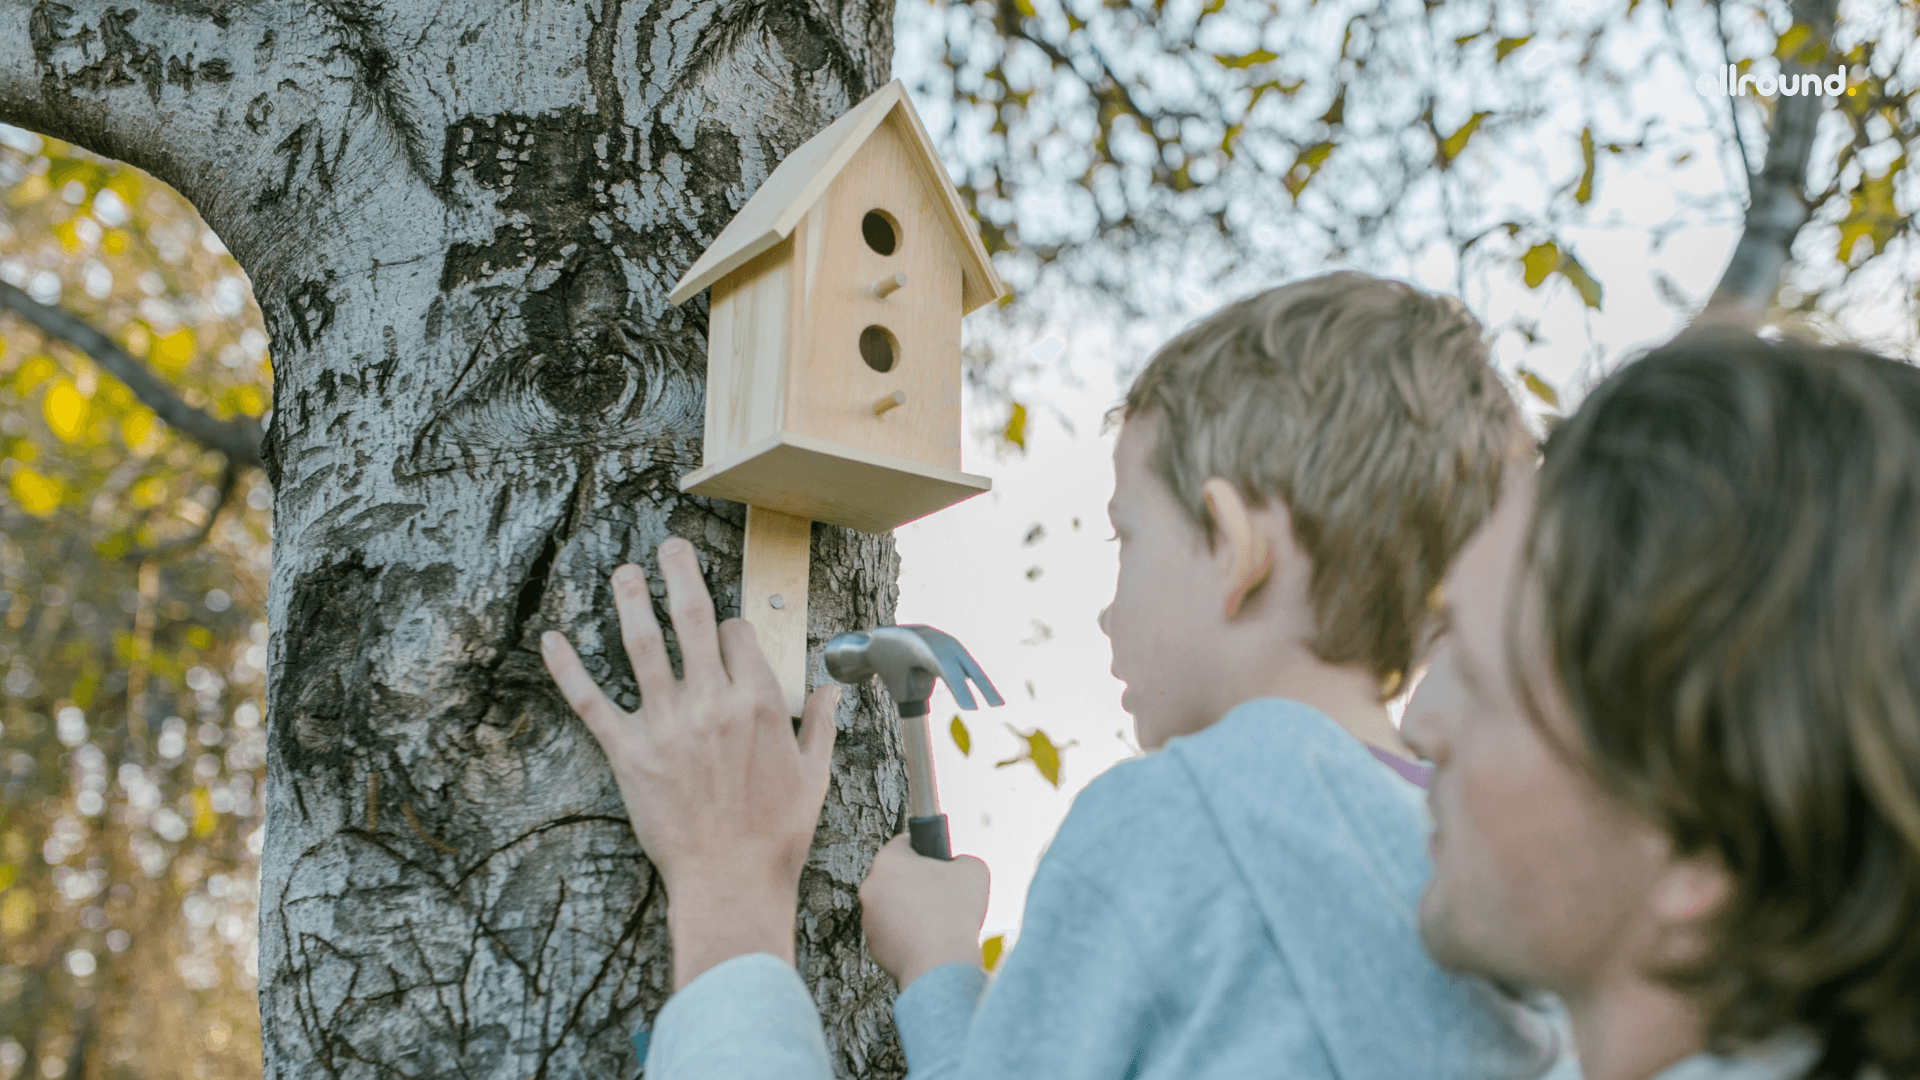 DIY BIRD FEEDERS FOR KIDS